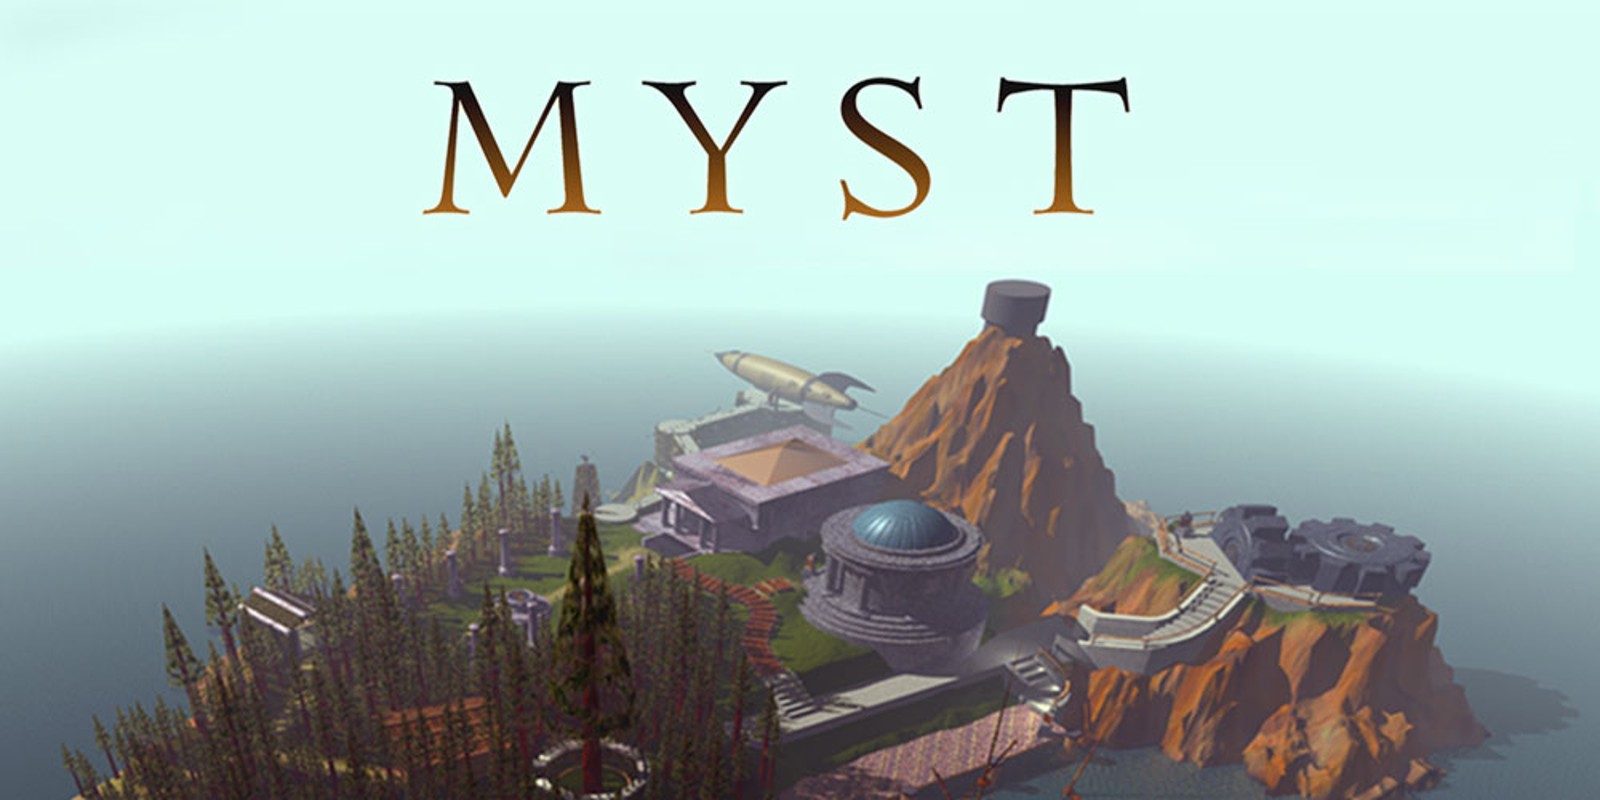 30 anni di Myst, tra passato e futuro della saga